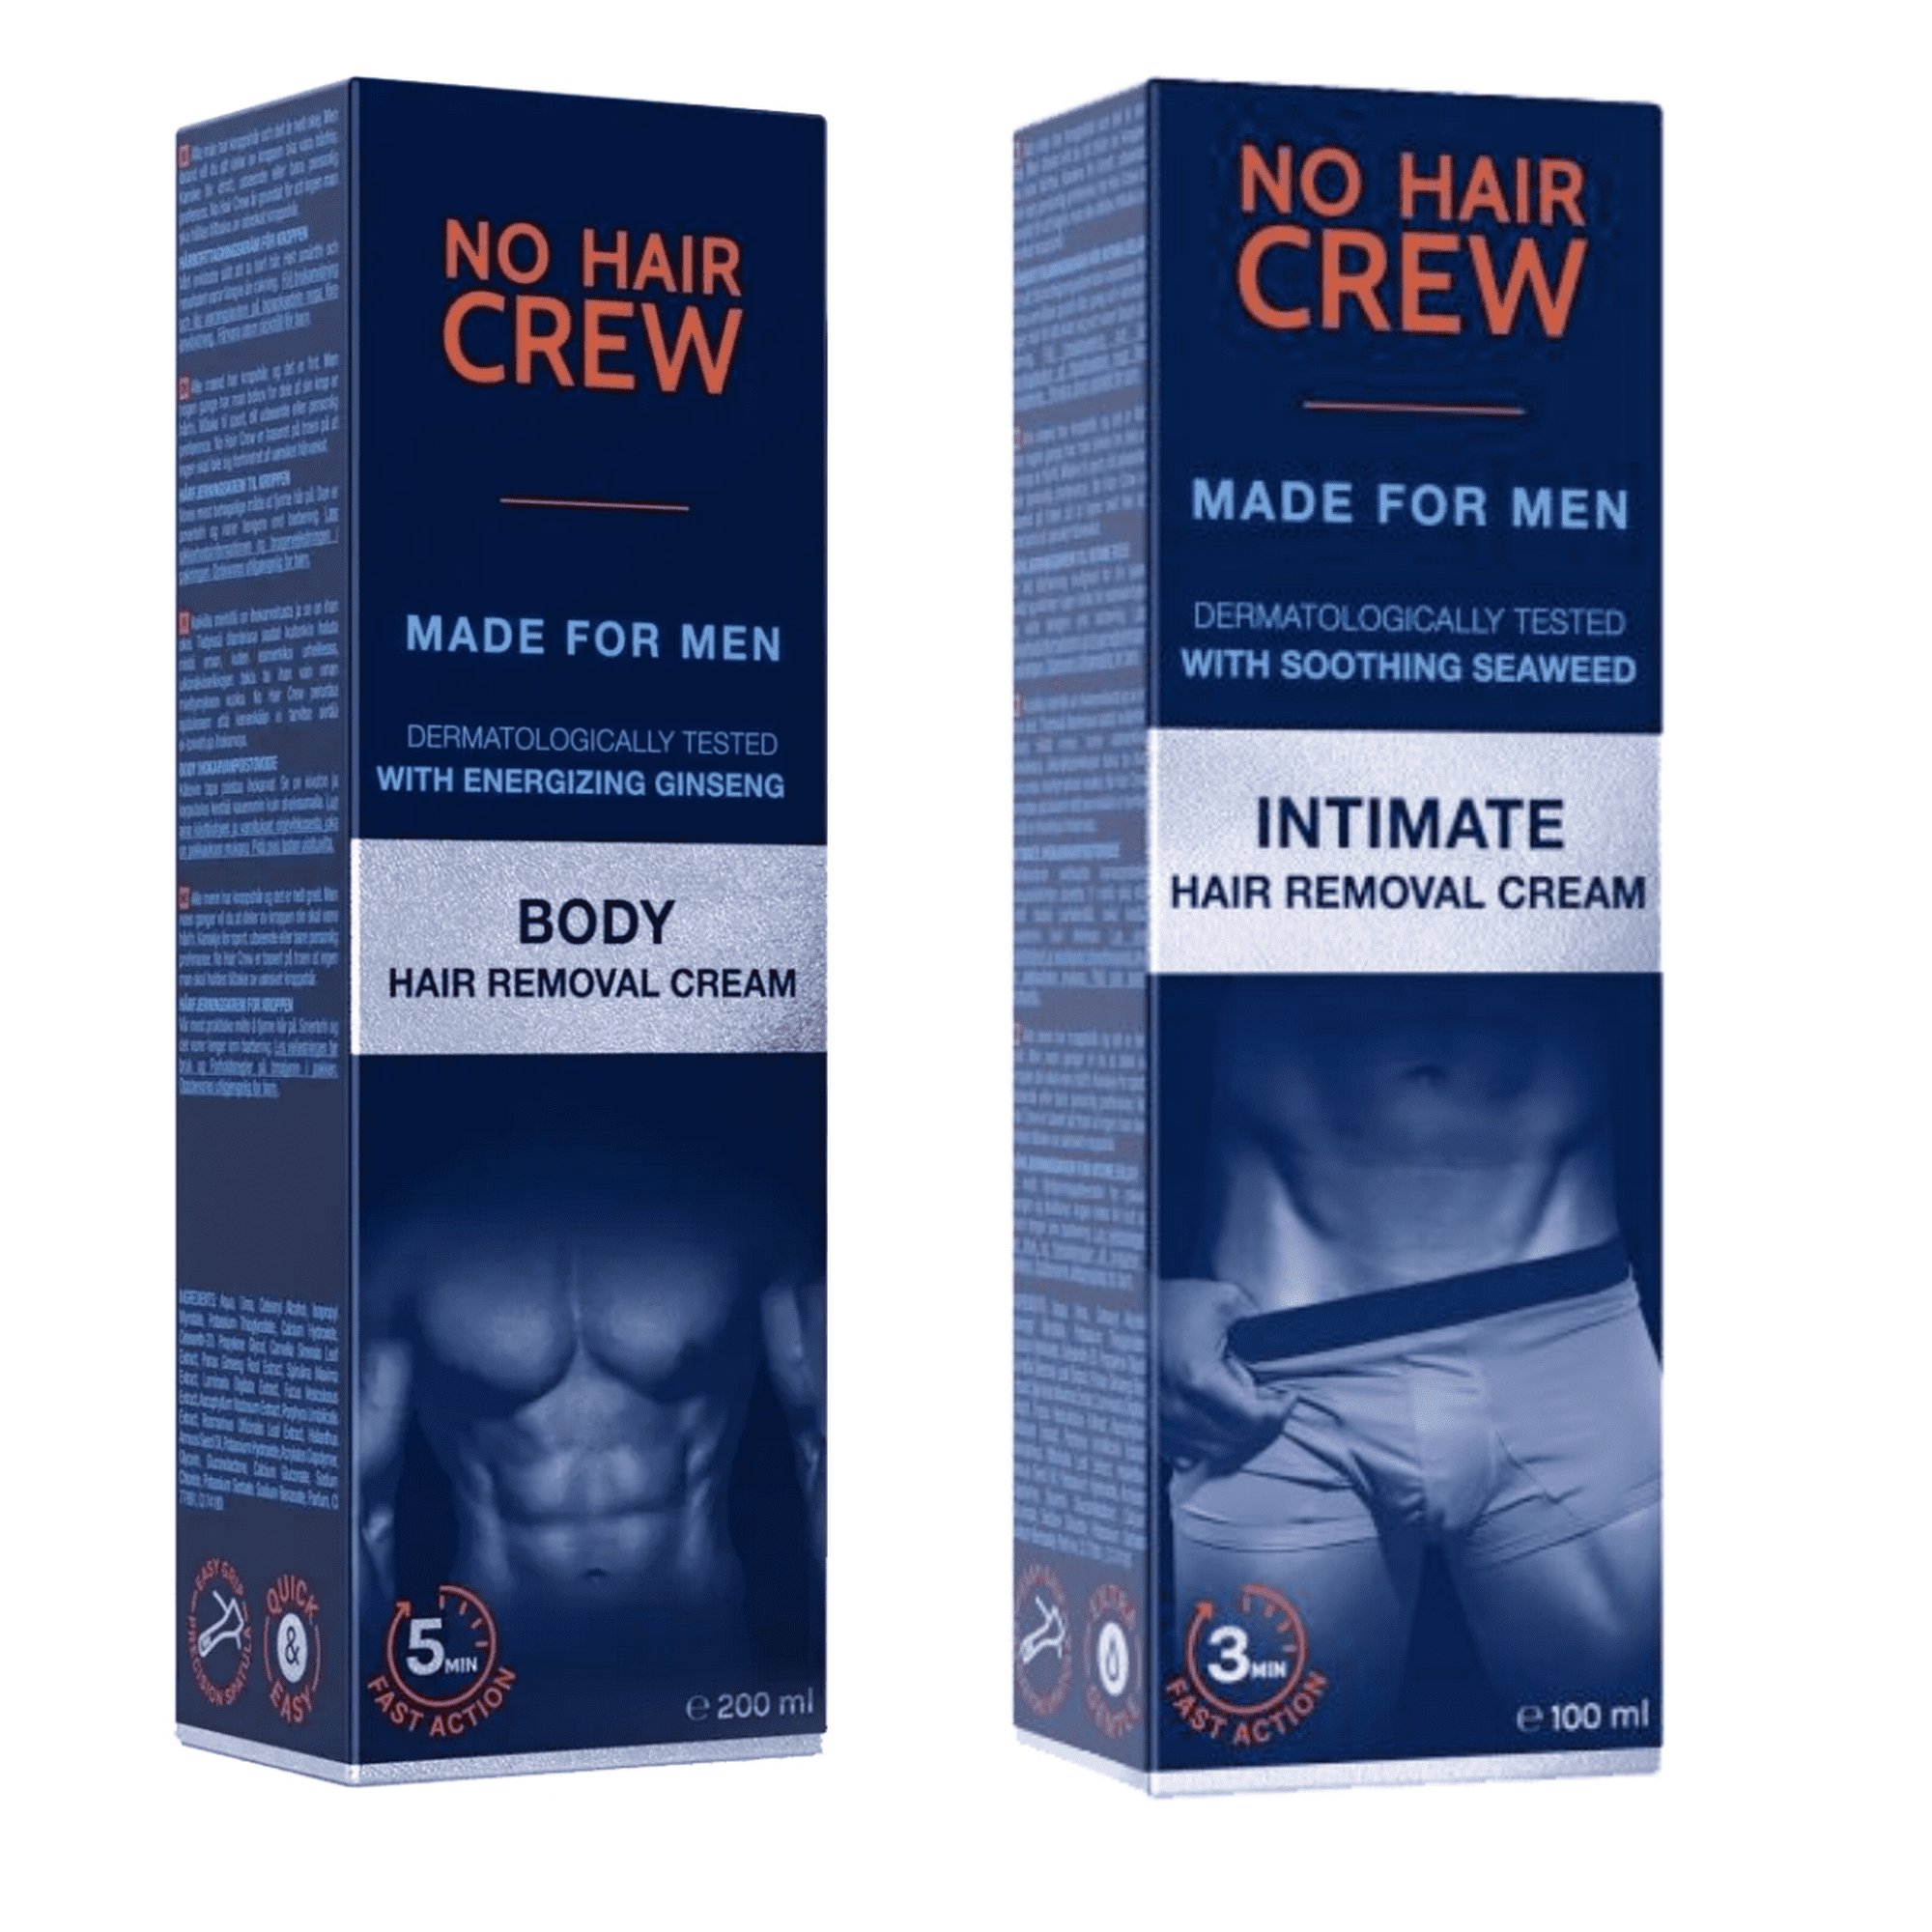 Cremas NO HAIR CREW Duo pack Depilatorias íntimas para hombre 200ml